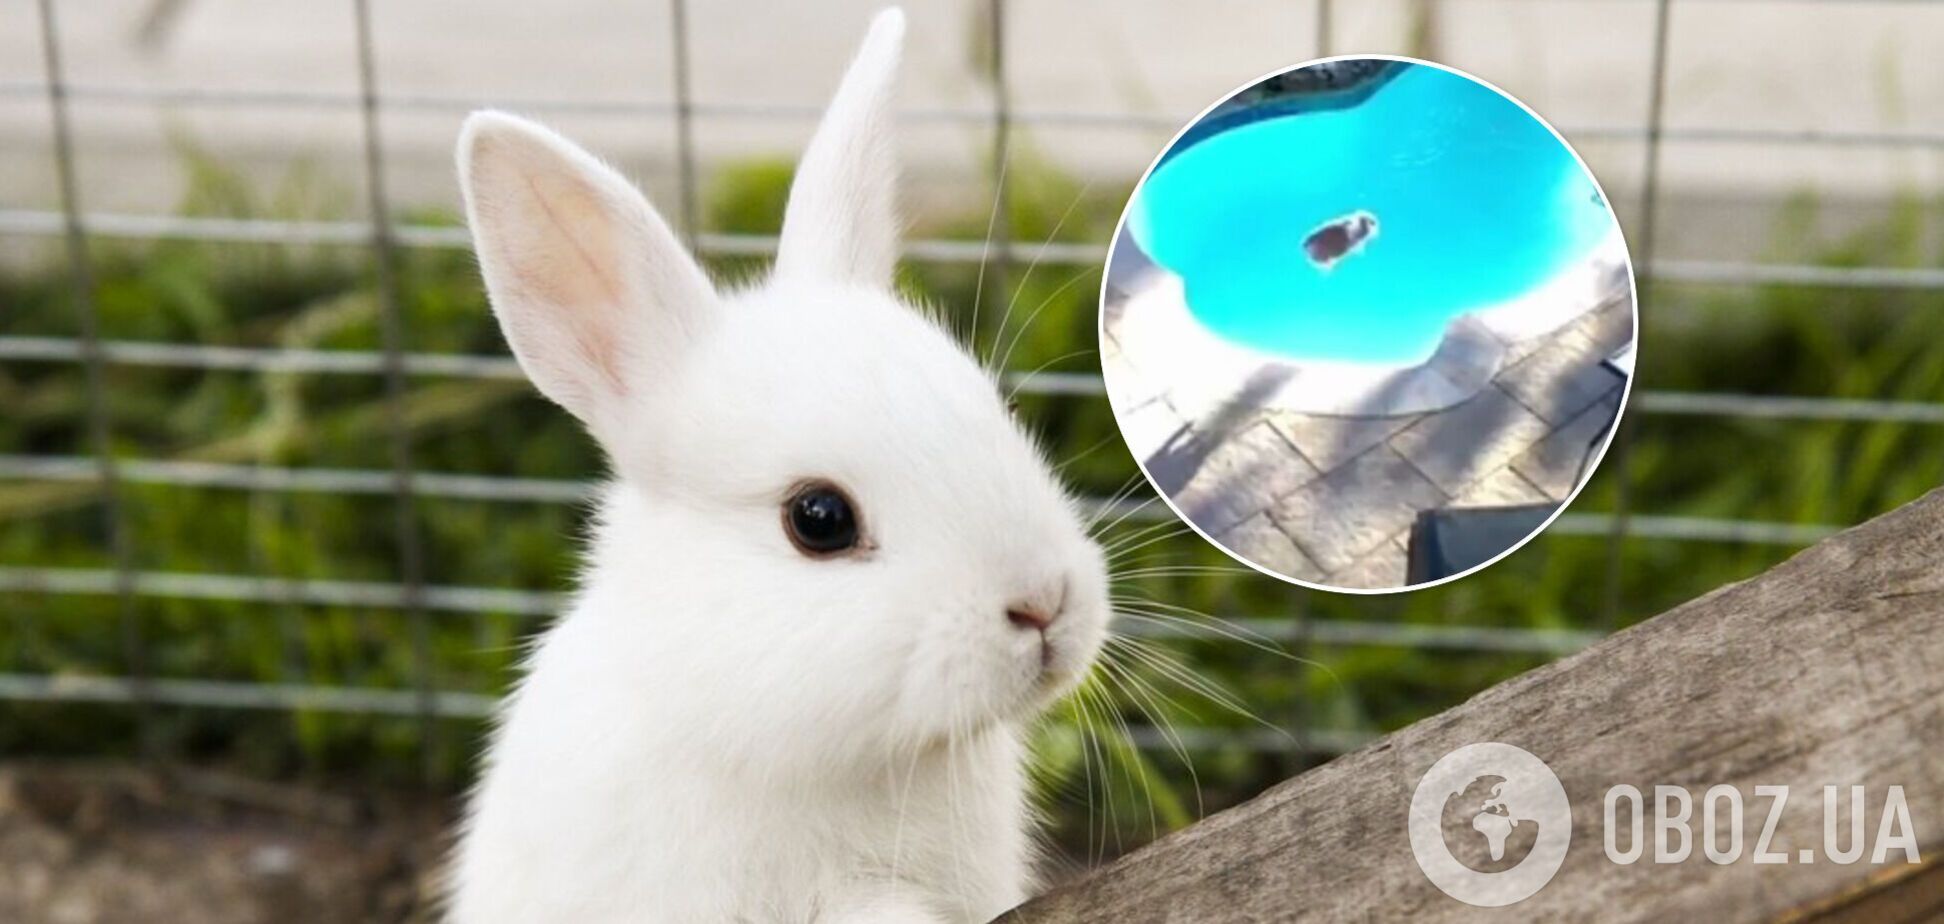 Кролик стрибнув 'бомбочкою' в басейн і налякав хазяйку. Відео